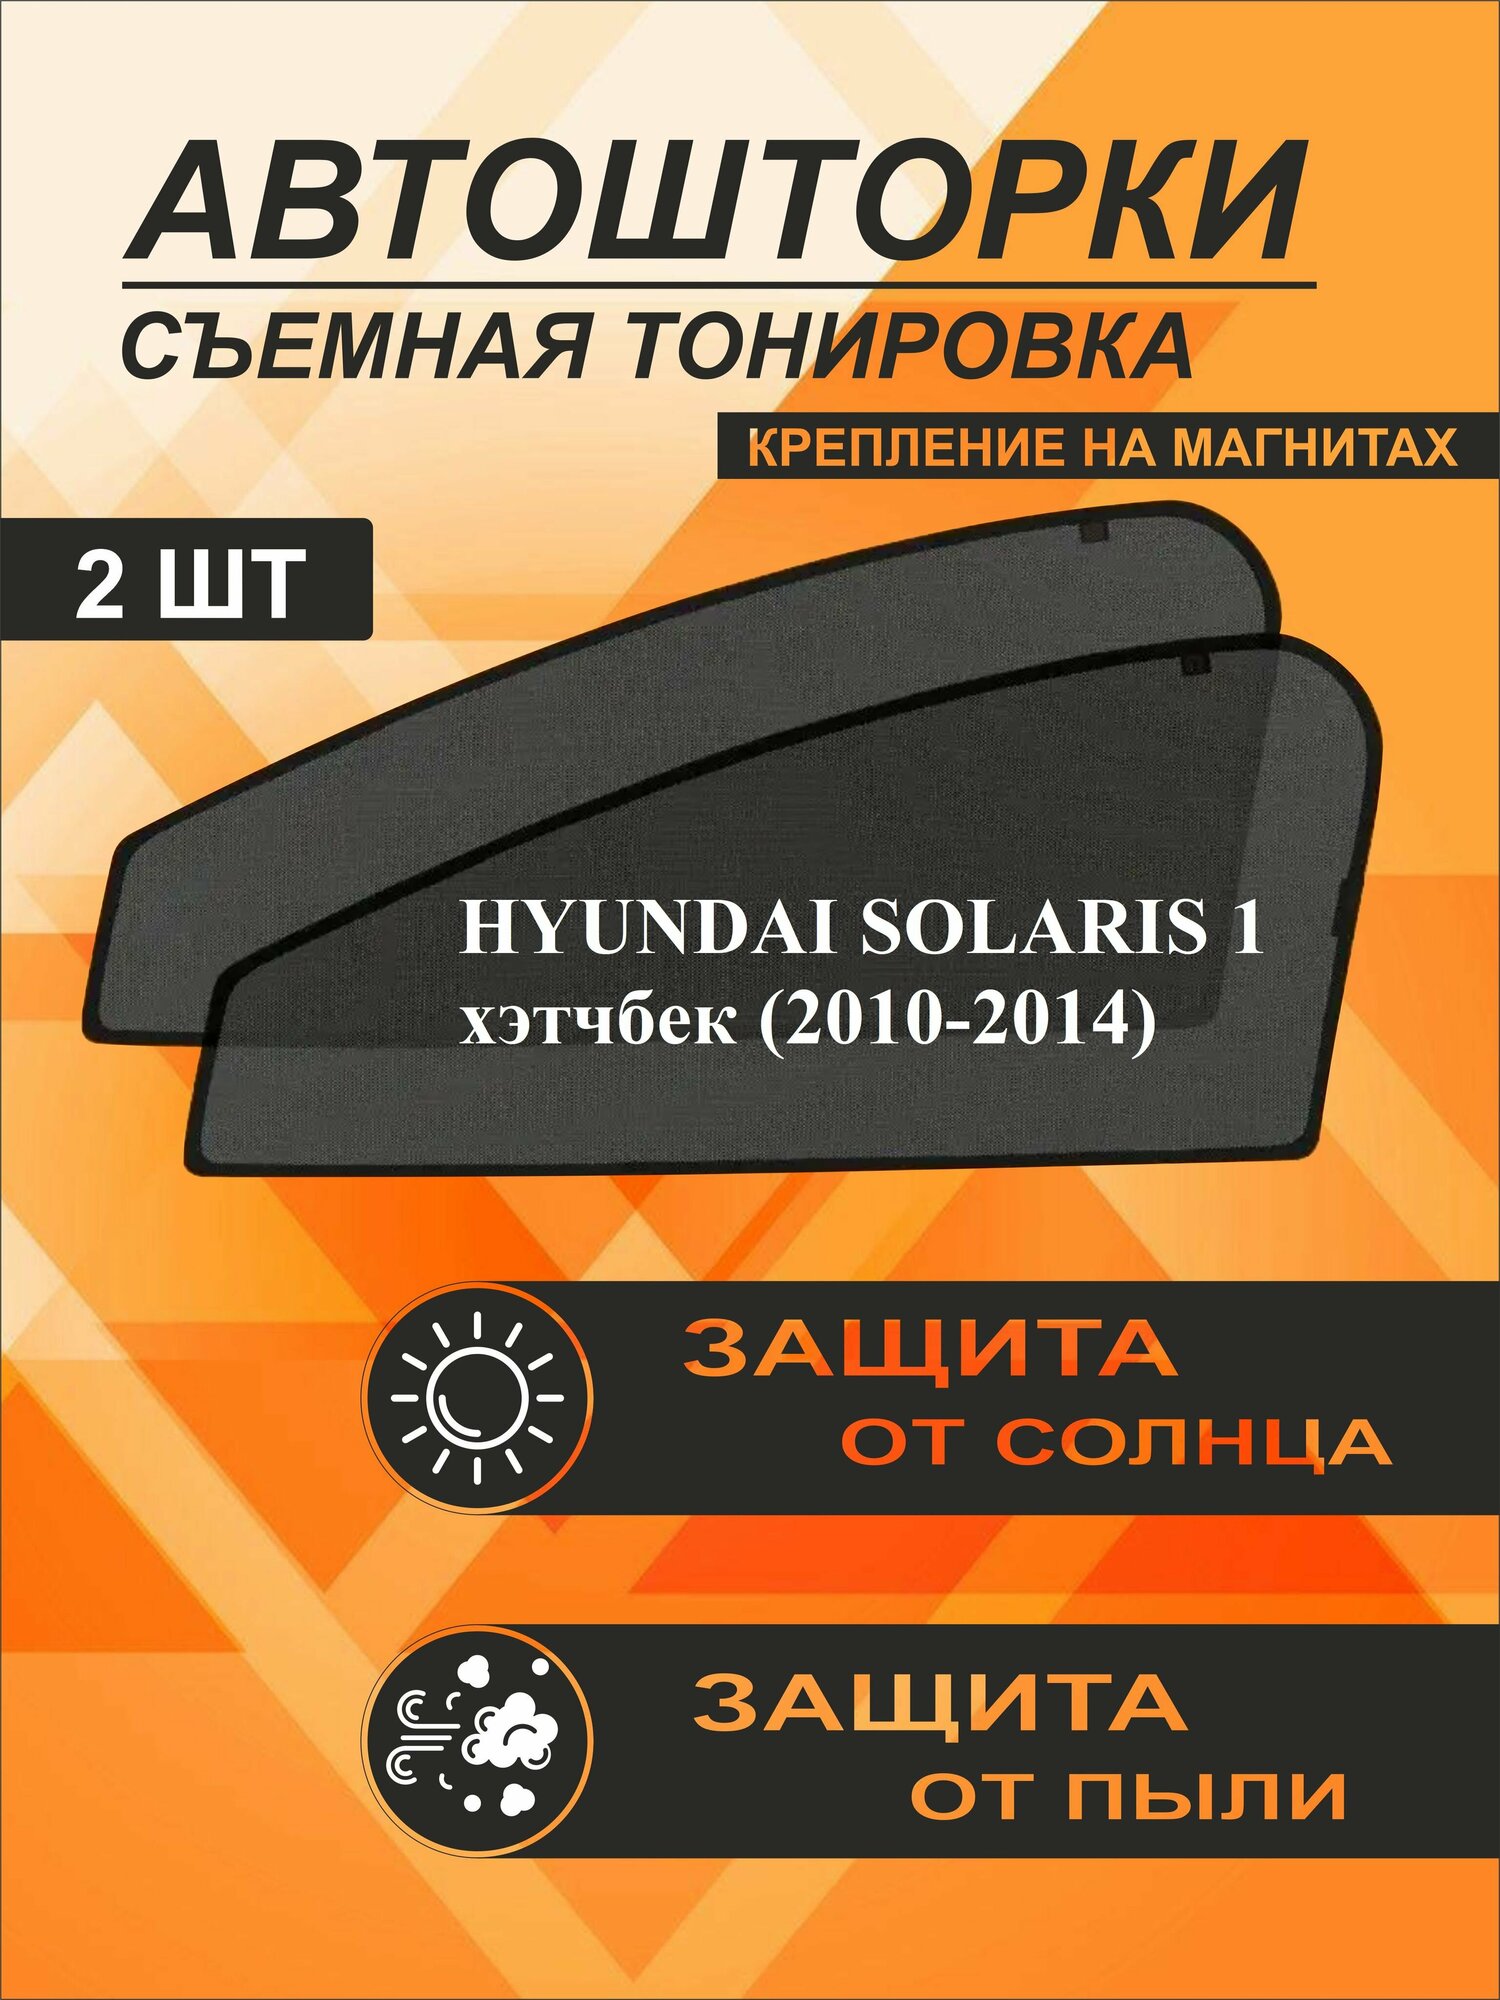 Автошторки на Hyundai Solaris 1 (2010-2014)хэтчбек